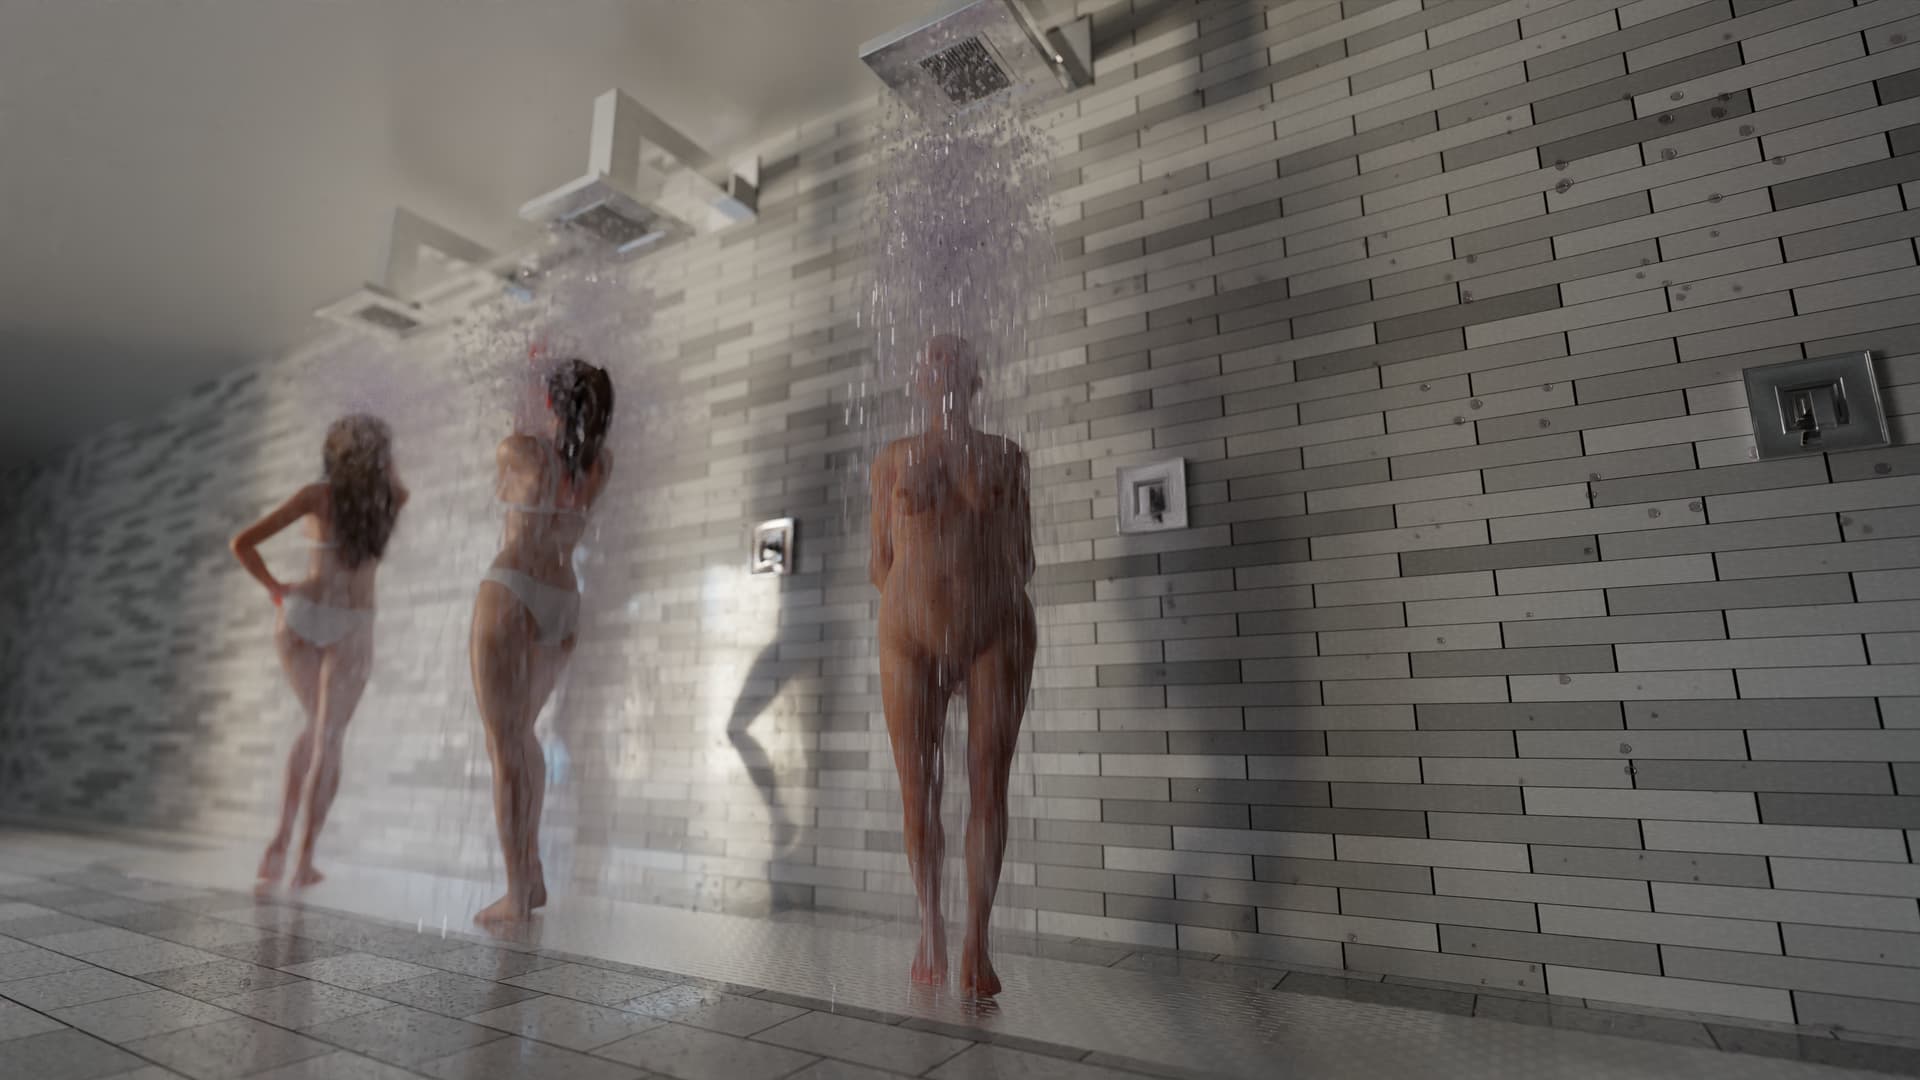 An artistic take on nudity: de jongs classy nude gallery